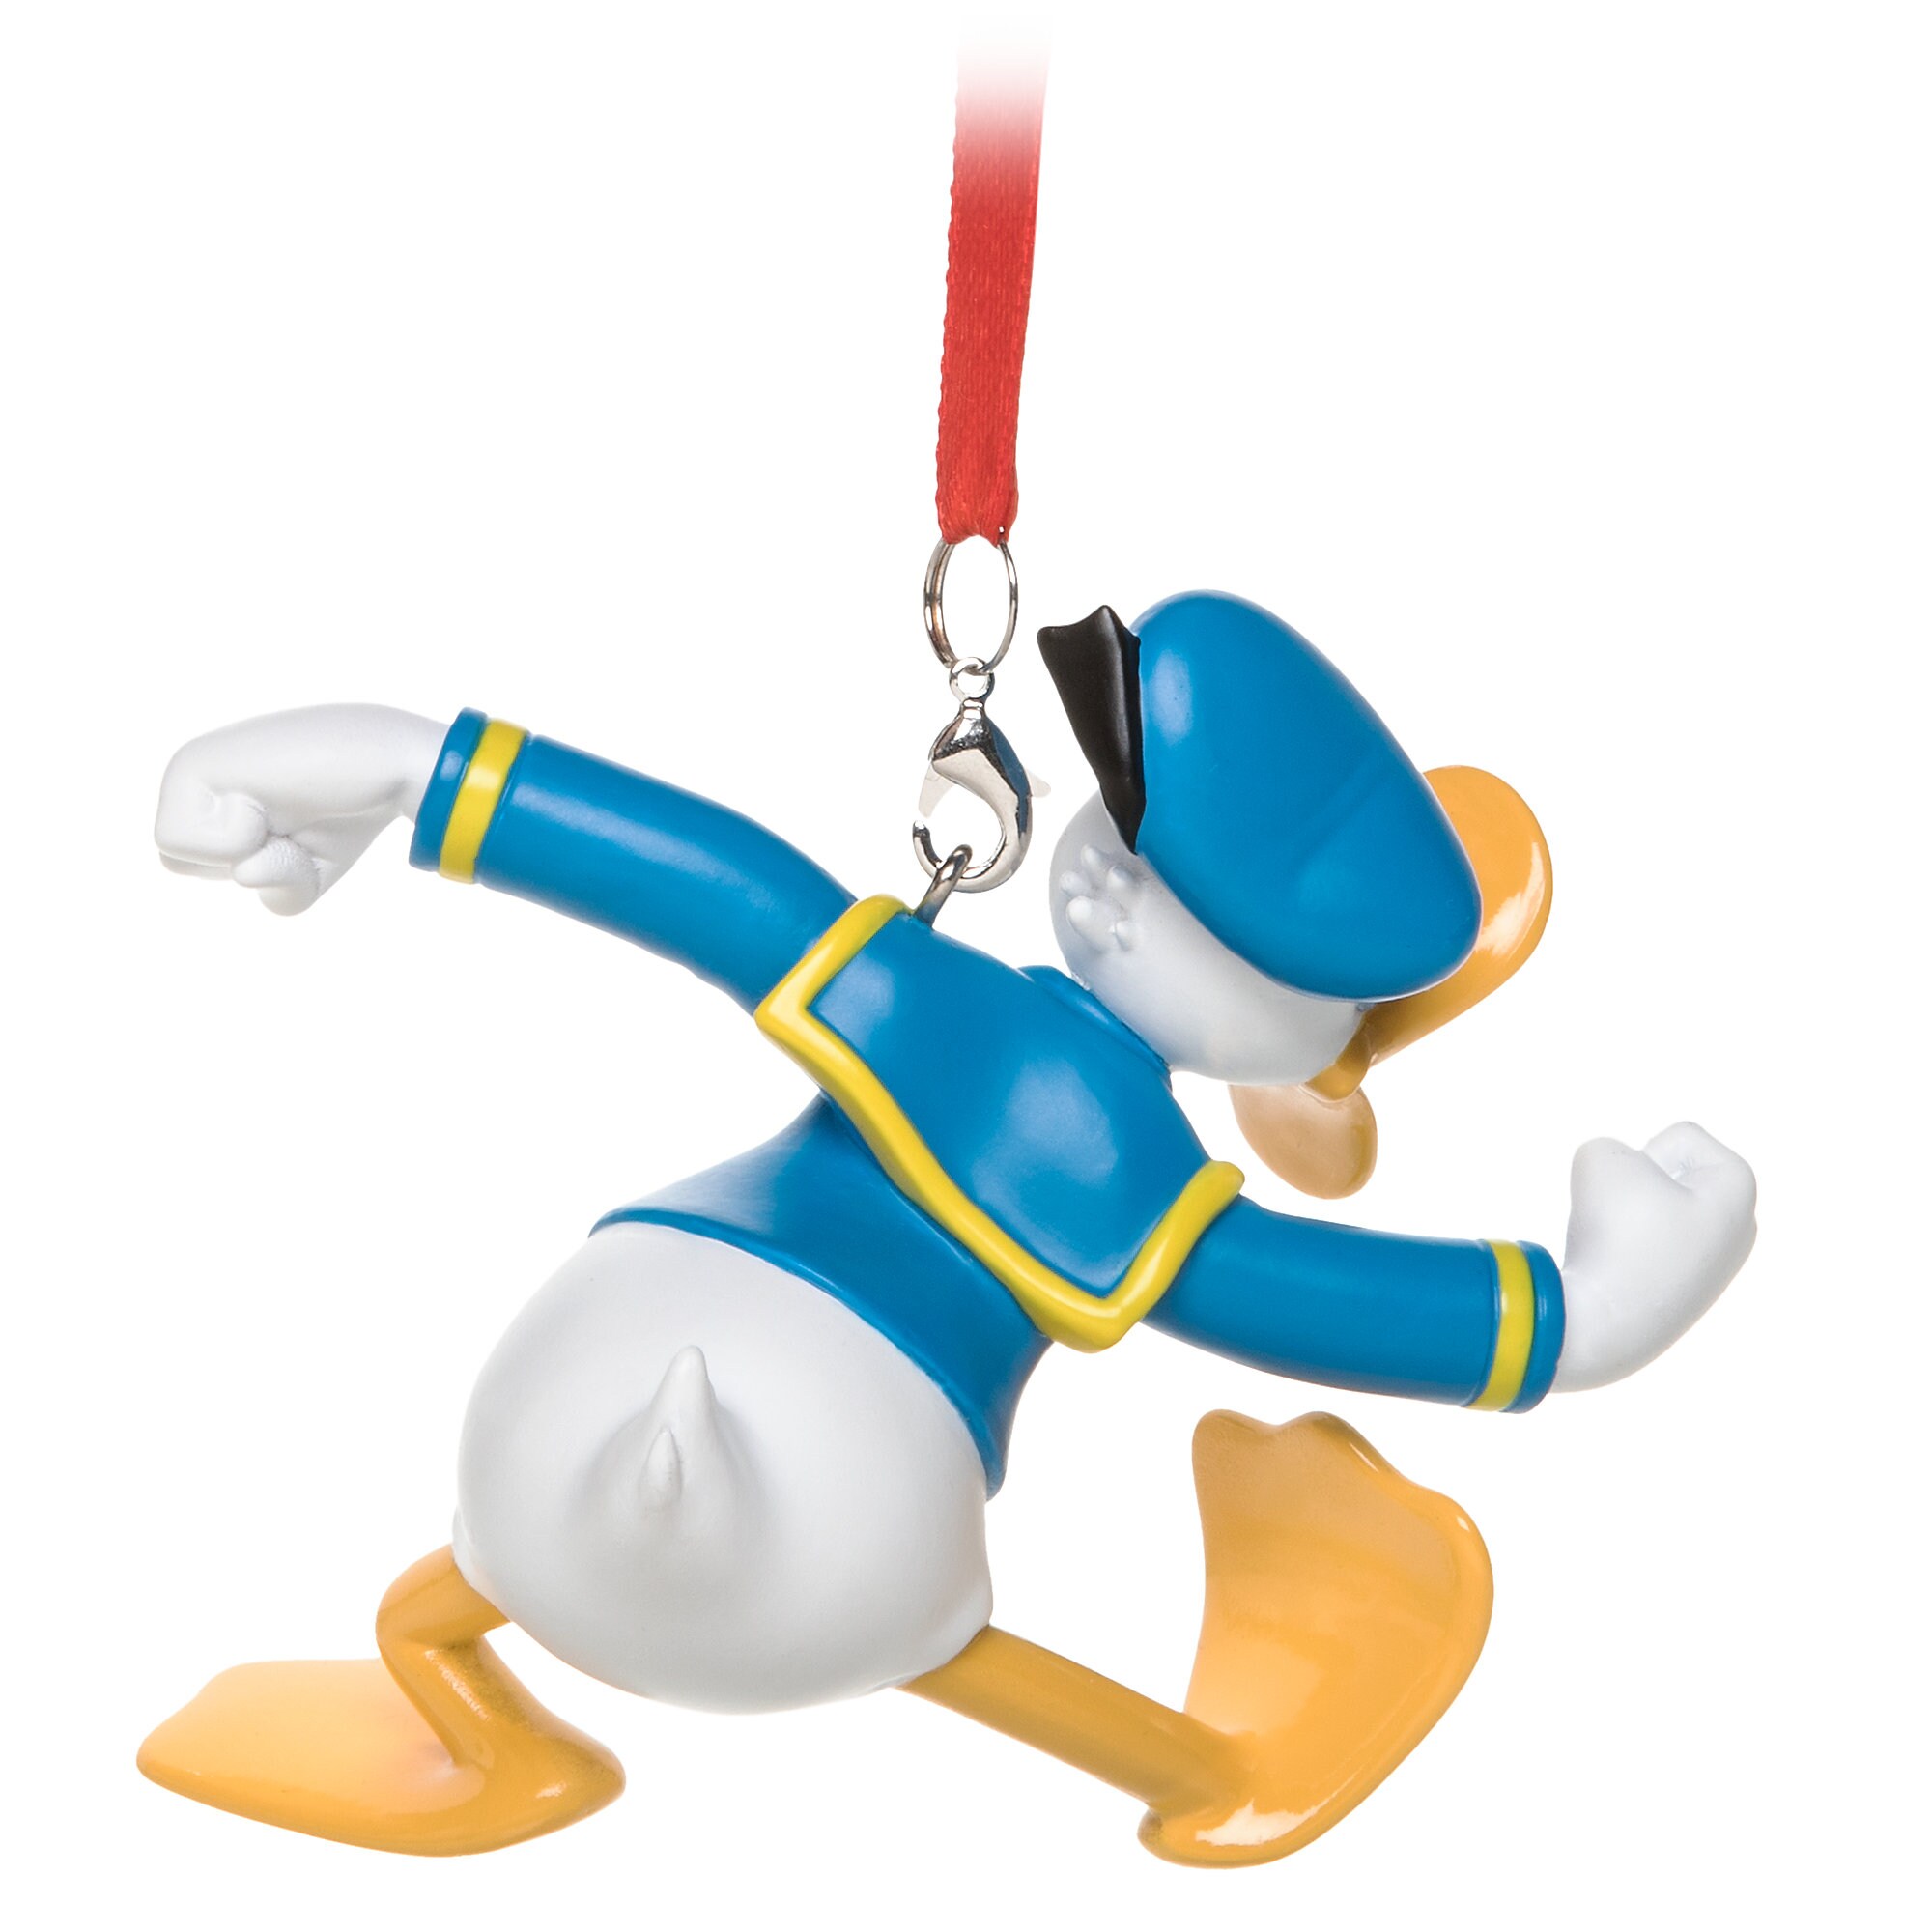 Donald Duck Figural Ornament